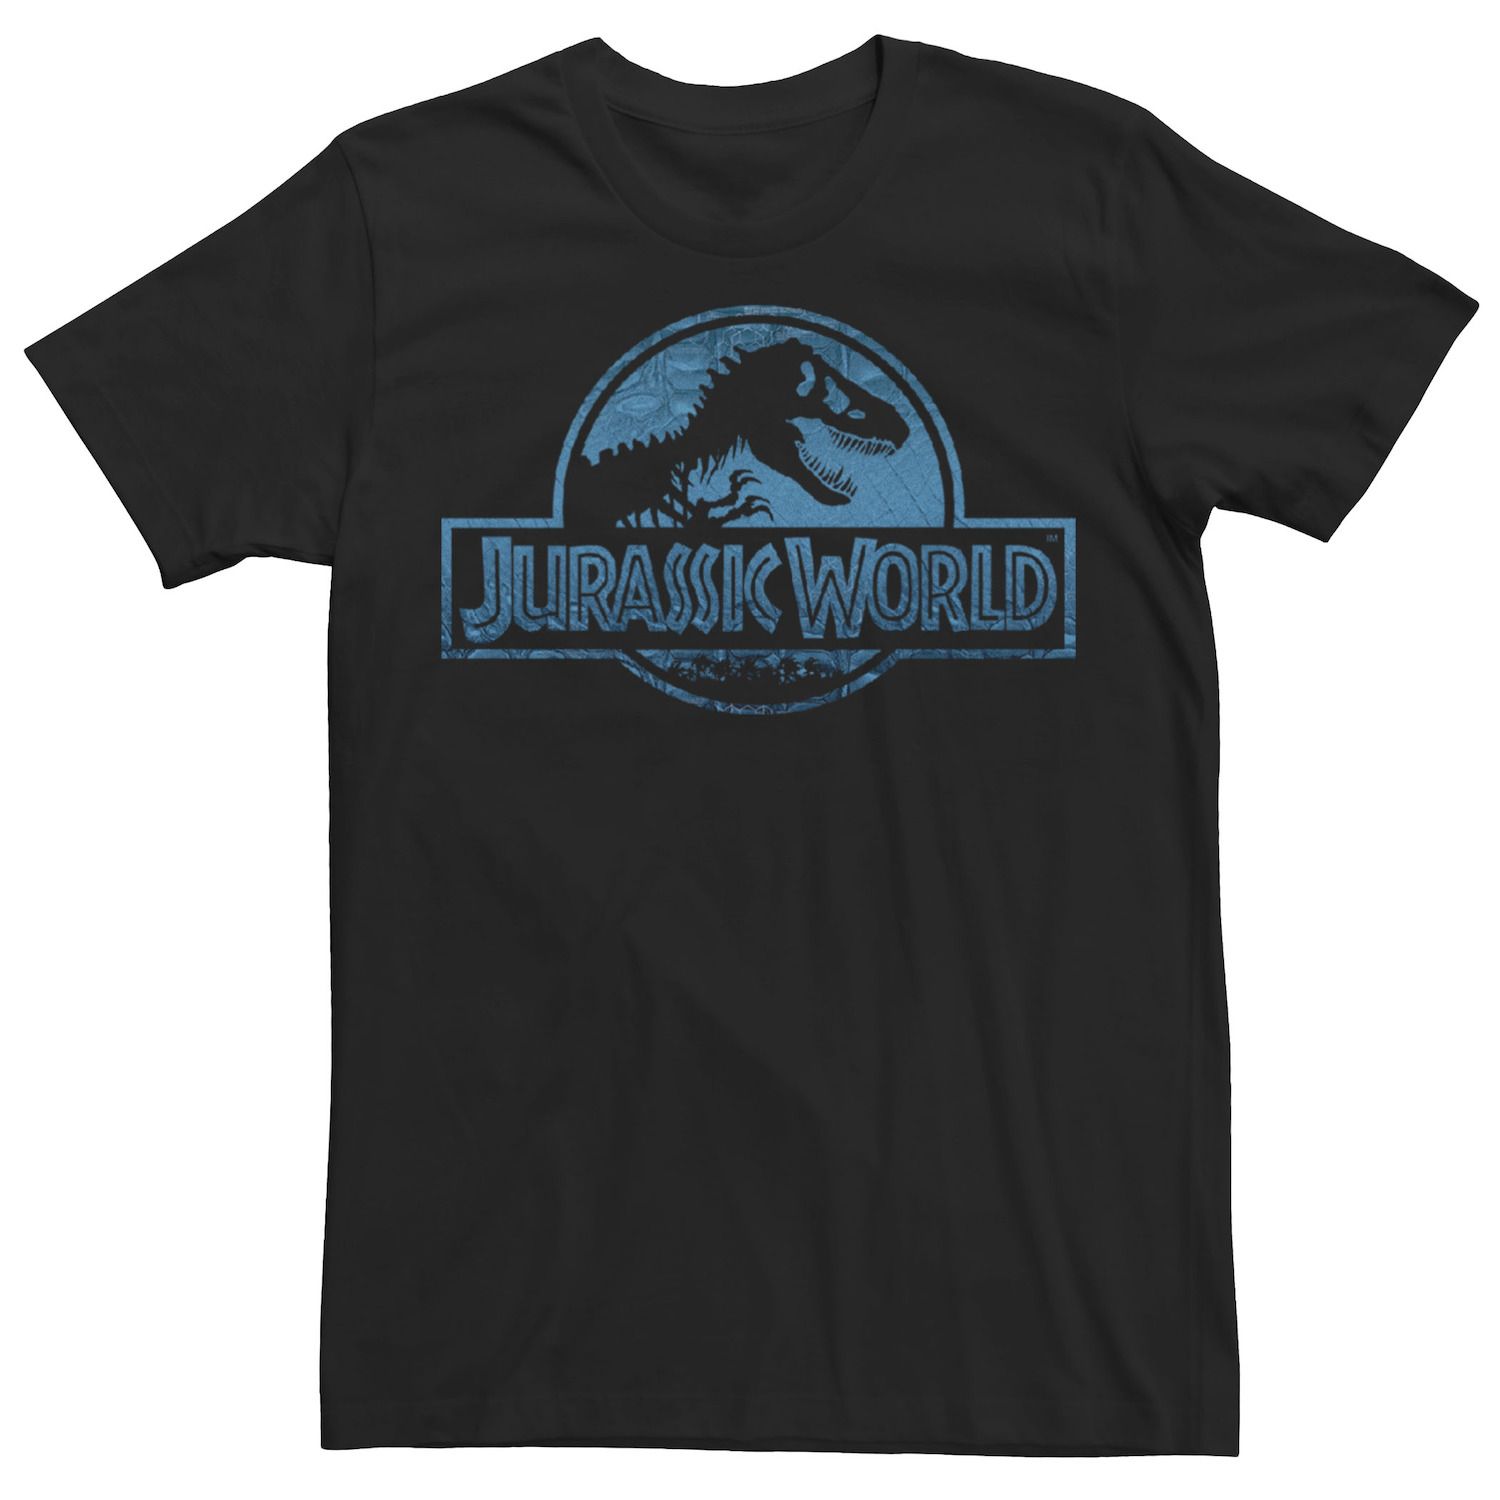 Мужская синяя футболка с логотипом динозавра Jurassic World